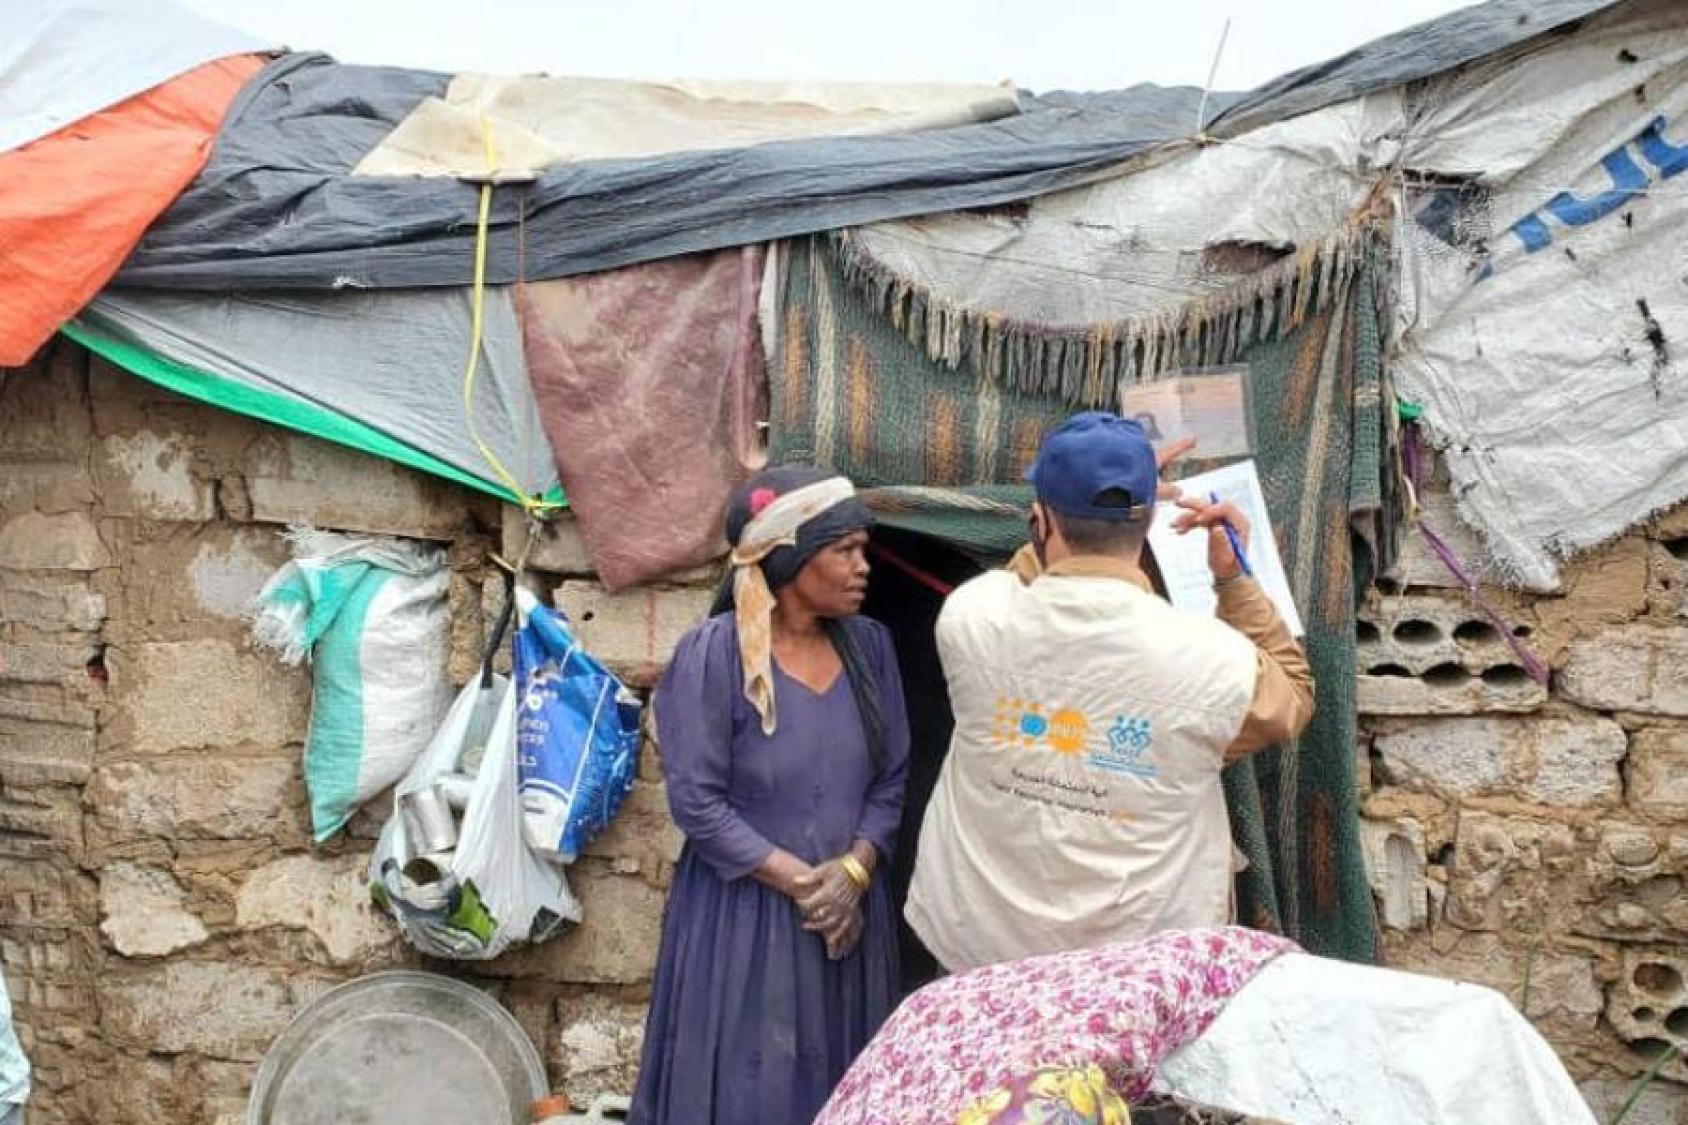 تتحدث امرأة نزحت بسبب الفيضانات المفاجئة في أغسطس إلى أحد موظفي صندوق الأمم المتحدة للسكان خارج مأواها الموقت في مأرب، اليمن.